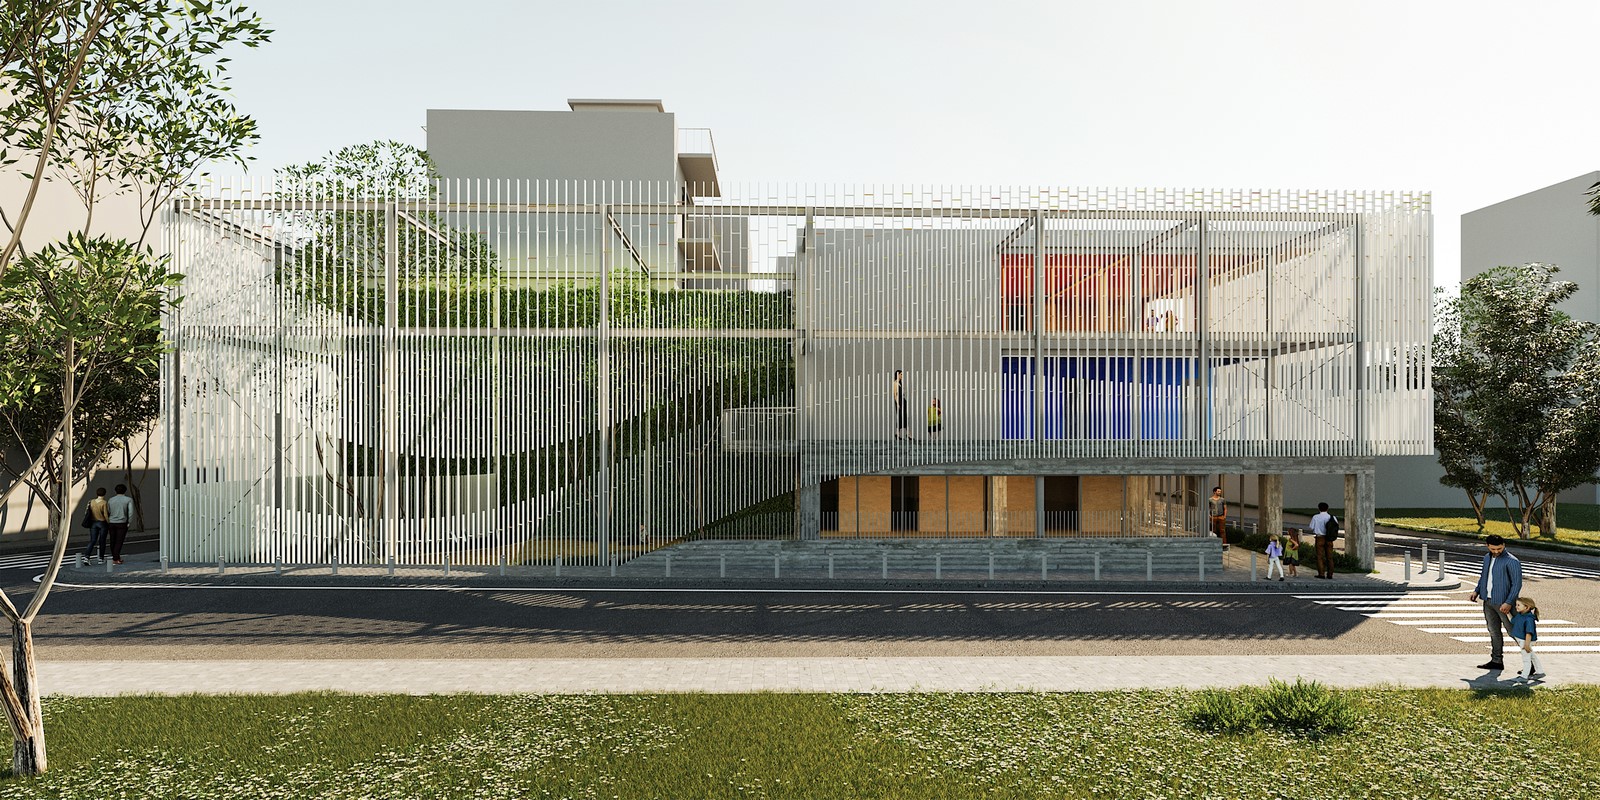 Archisearch Το γραφείο Petrās Architecture κέρδισε το Α' βραβείο στο διαγωνισμό για την επέκταση και προσθήκη ορόφου σε βρεφονηπιακό σταθµό στον Πειραιά